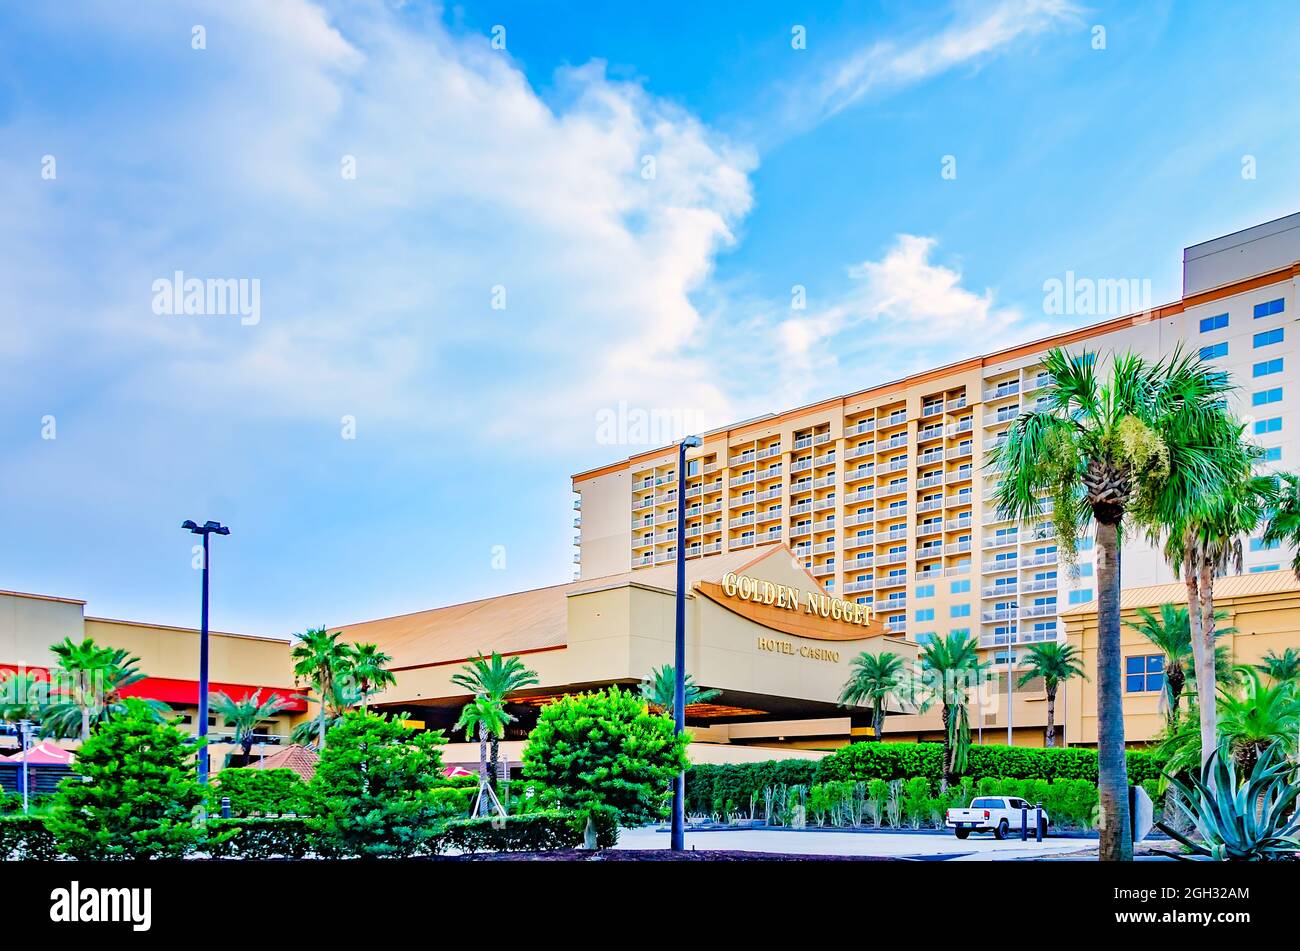 Golden Nugget Casino est photographié, le 31 août 2021, à Biloxi, Mississippi. Banque D'Images